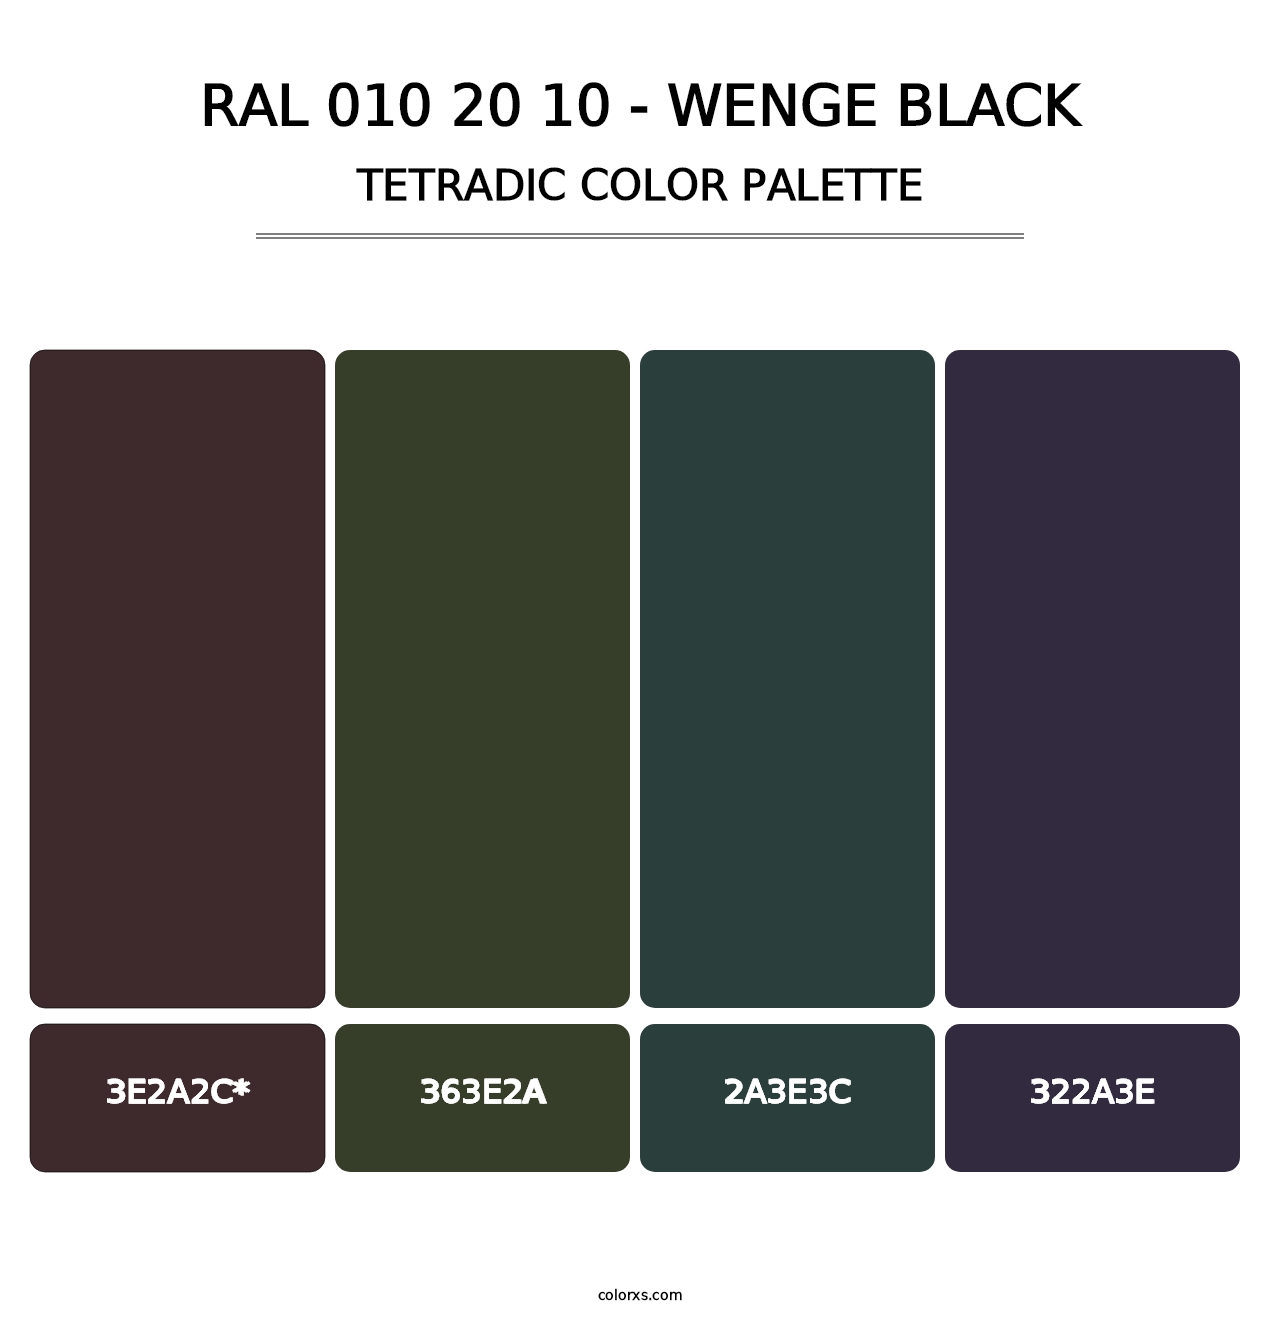 RAL 010 20 10 - Wenge Black - Tetradic Color Palette